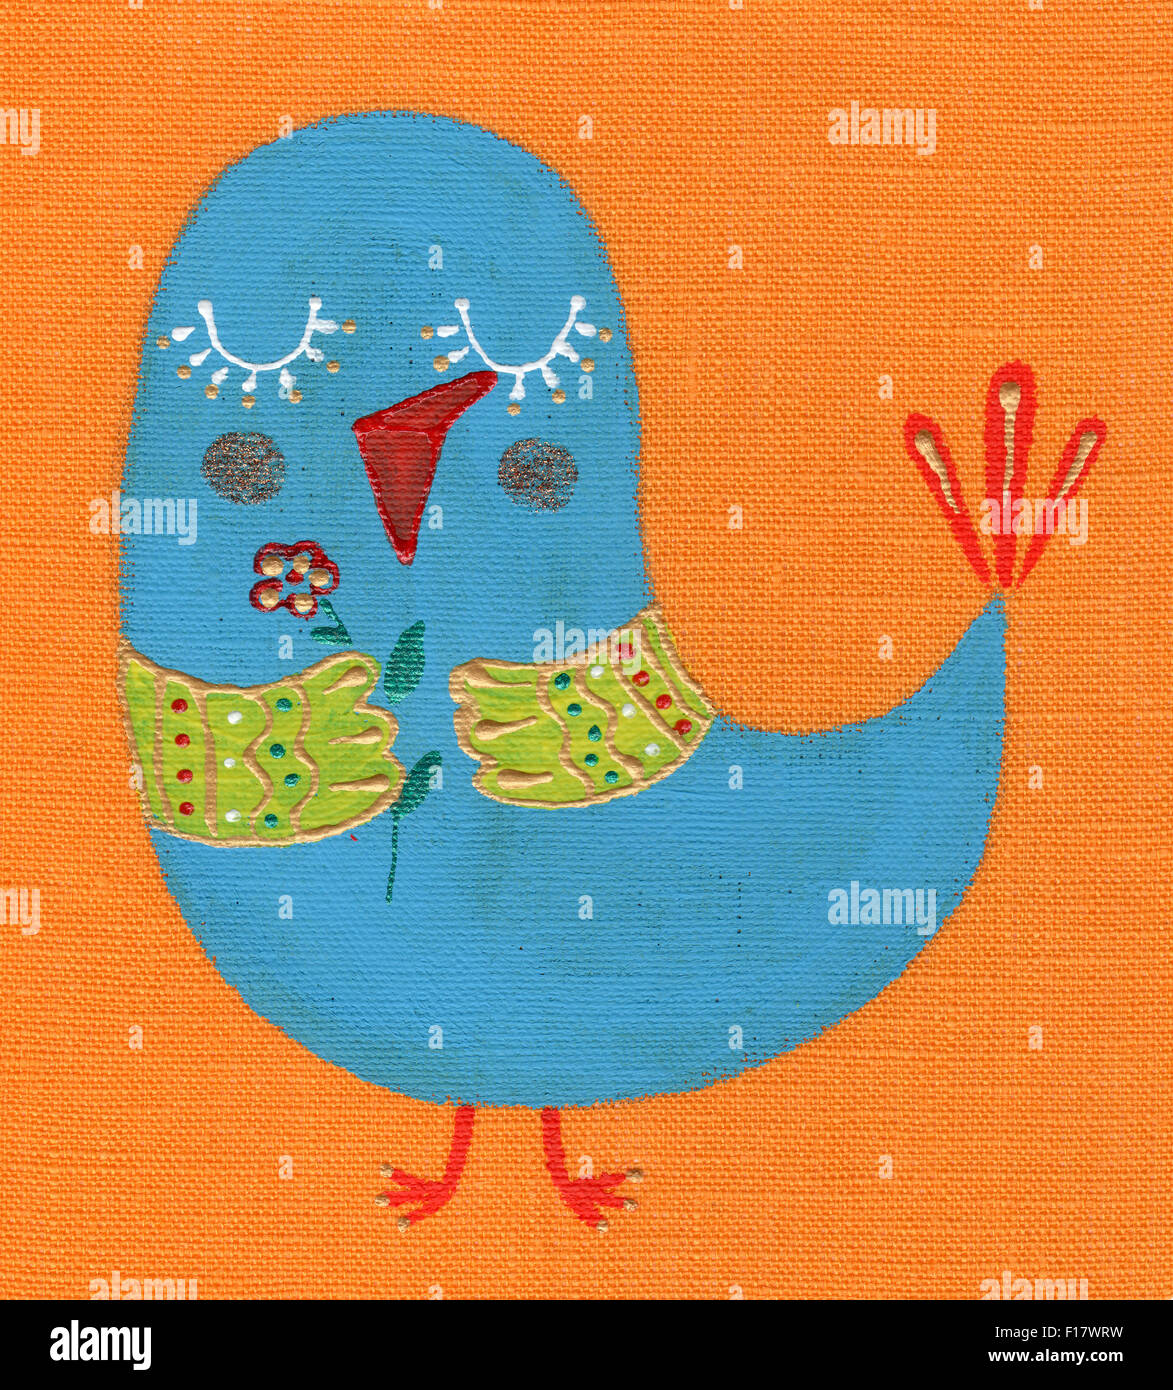 Dessin enfant joyeuse peinture sur tissu, bird Banque D'Images